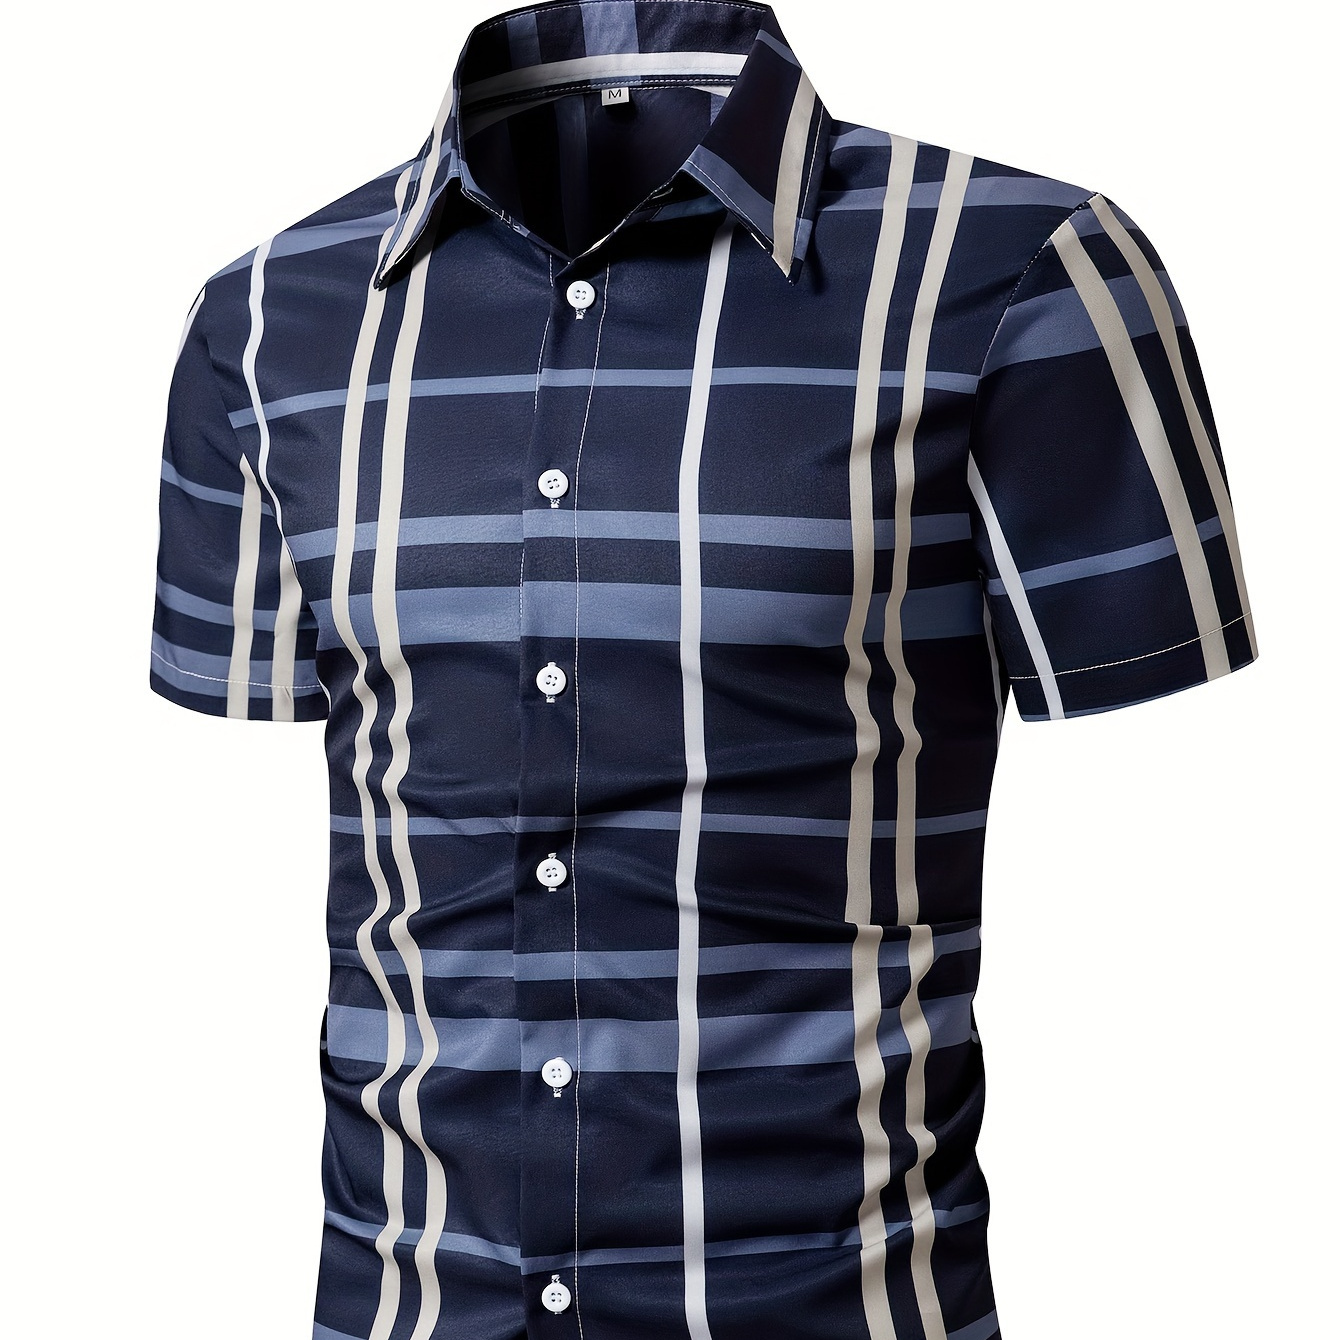 

Plaid Pattern Random Print Men's Short Sleeve Button Up Shirt, Men's Leisurewear For Summer